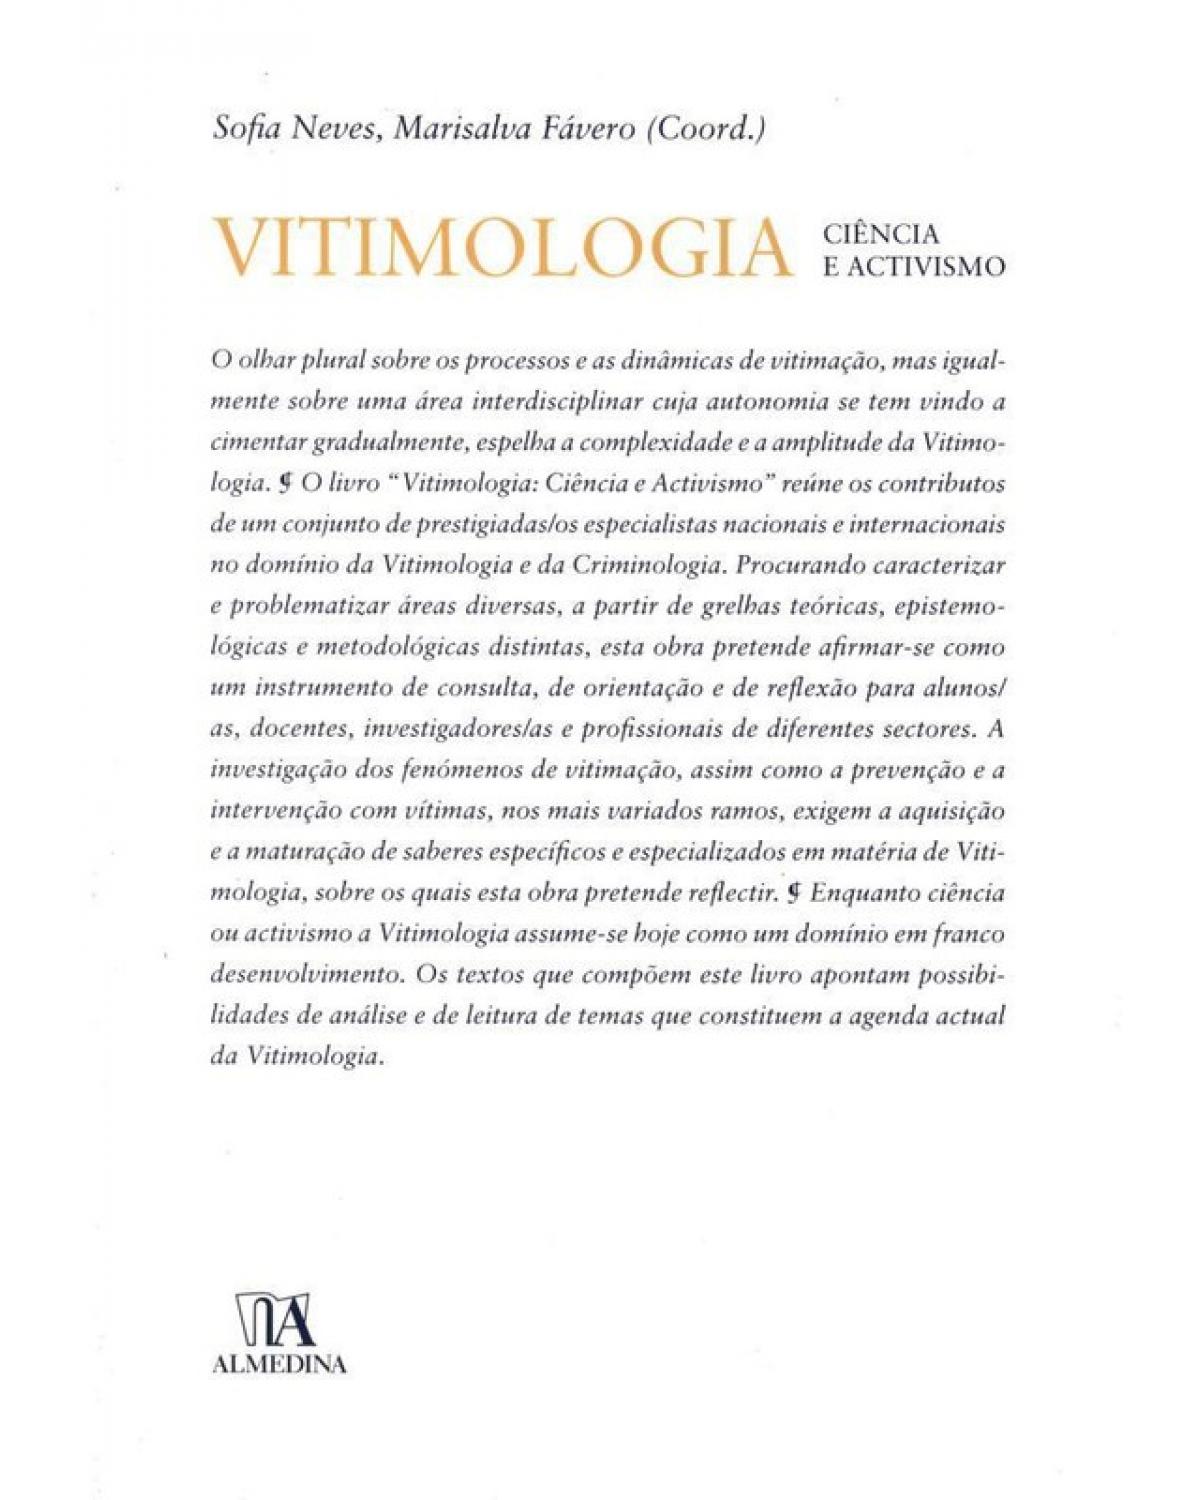 Vitimologia - ciência e activismo - 1ª Edição | 2010